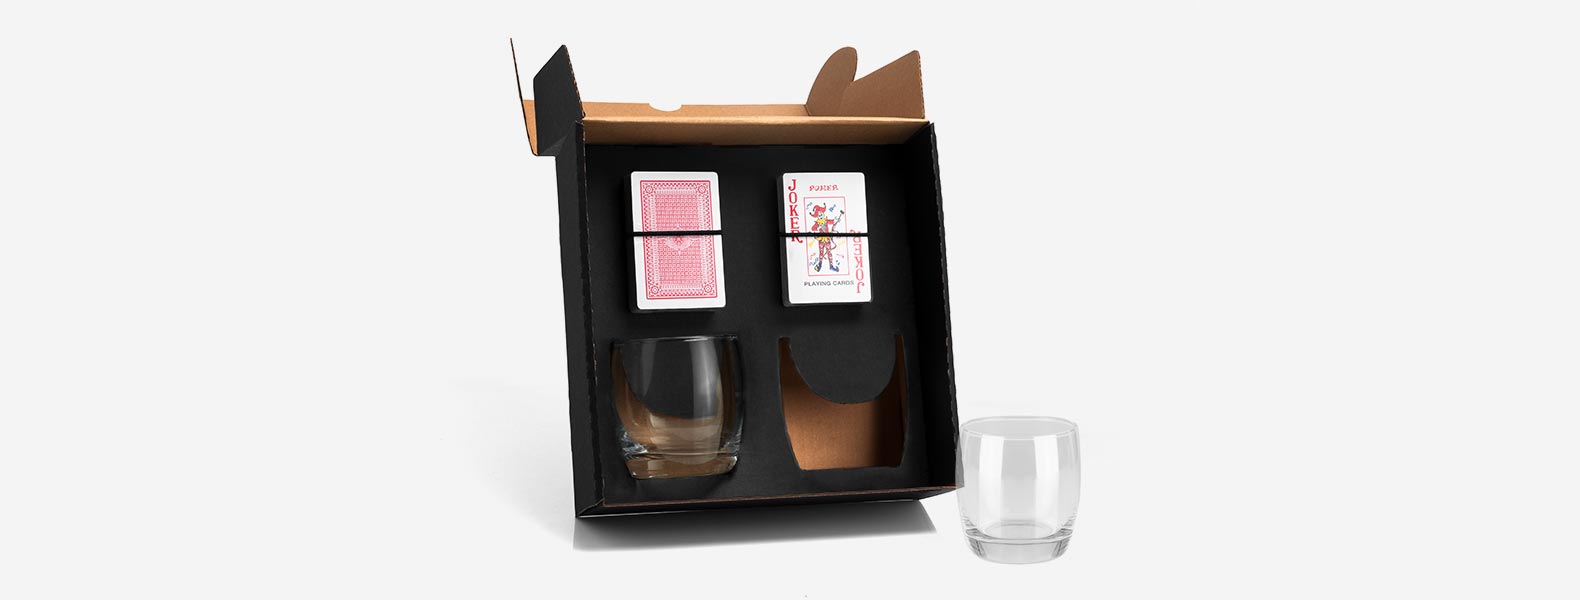 Kit Whisky; Conta com dois copos em vidro; Jogo de baralho. Estão perfeitamente acomodados em uma caixa para presentear.